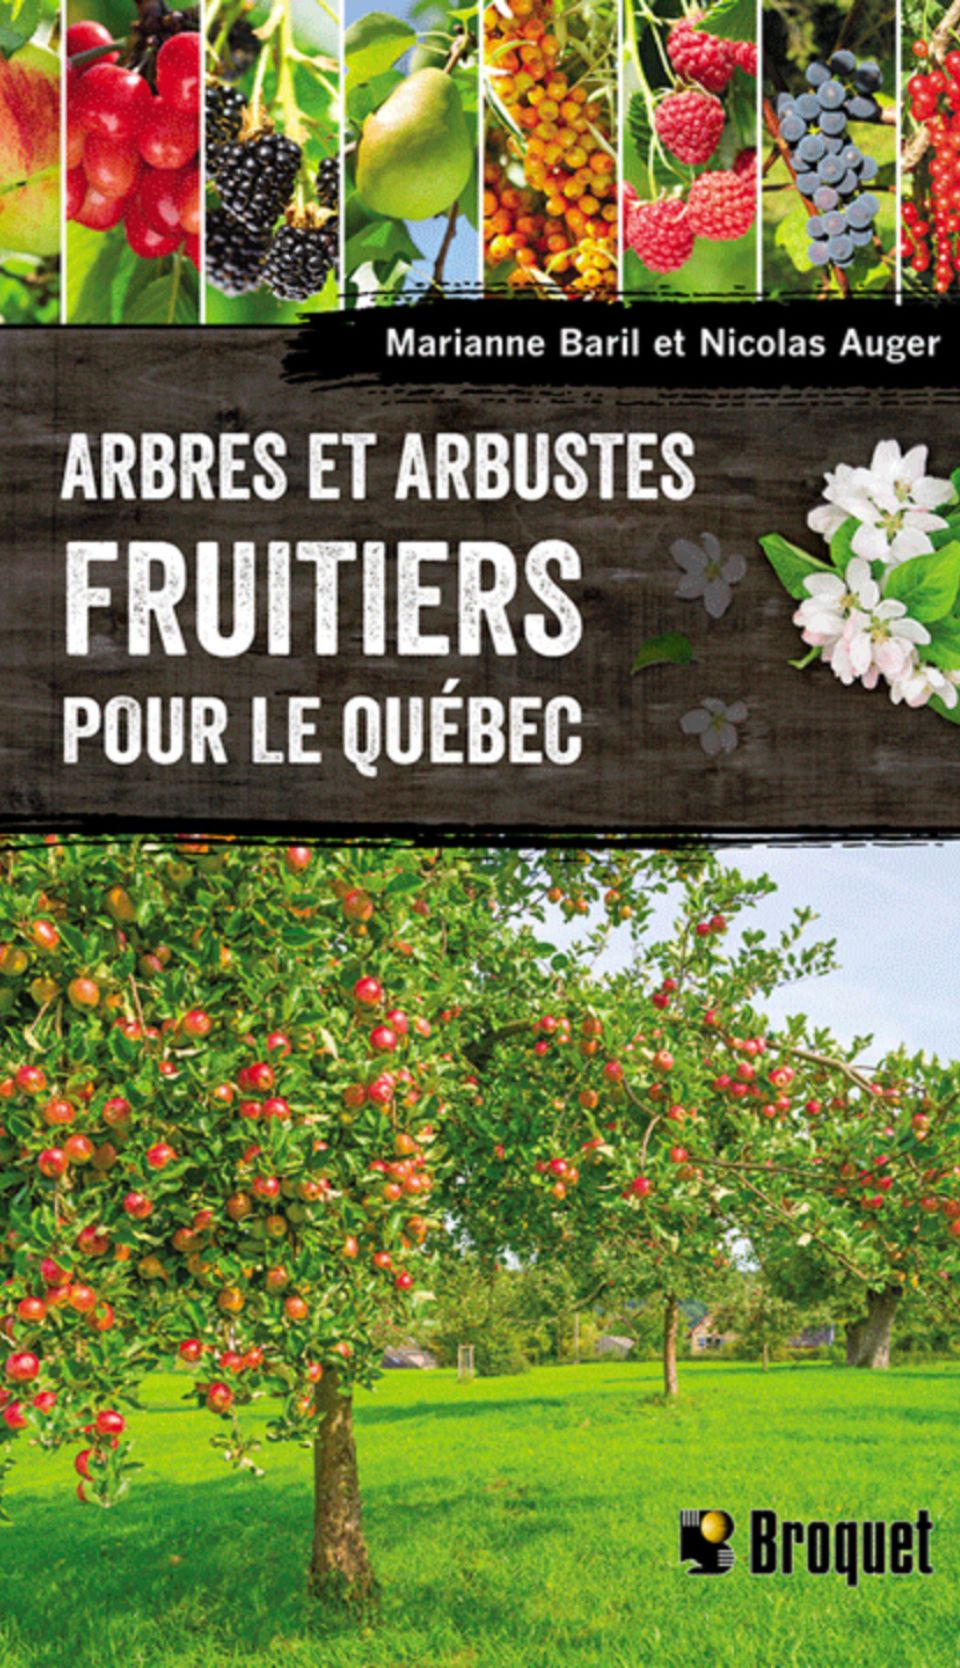 Livres d'horticulture Québec, jardinage et potager